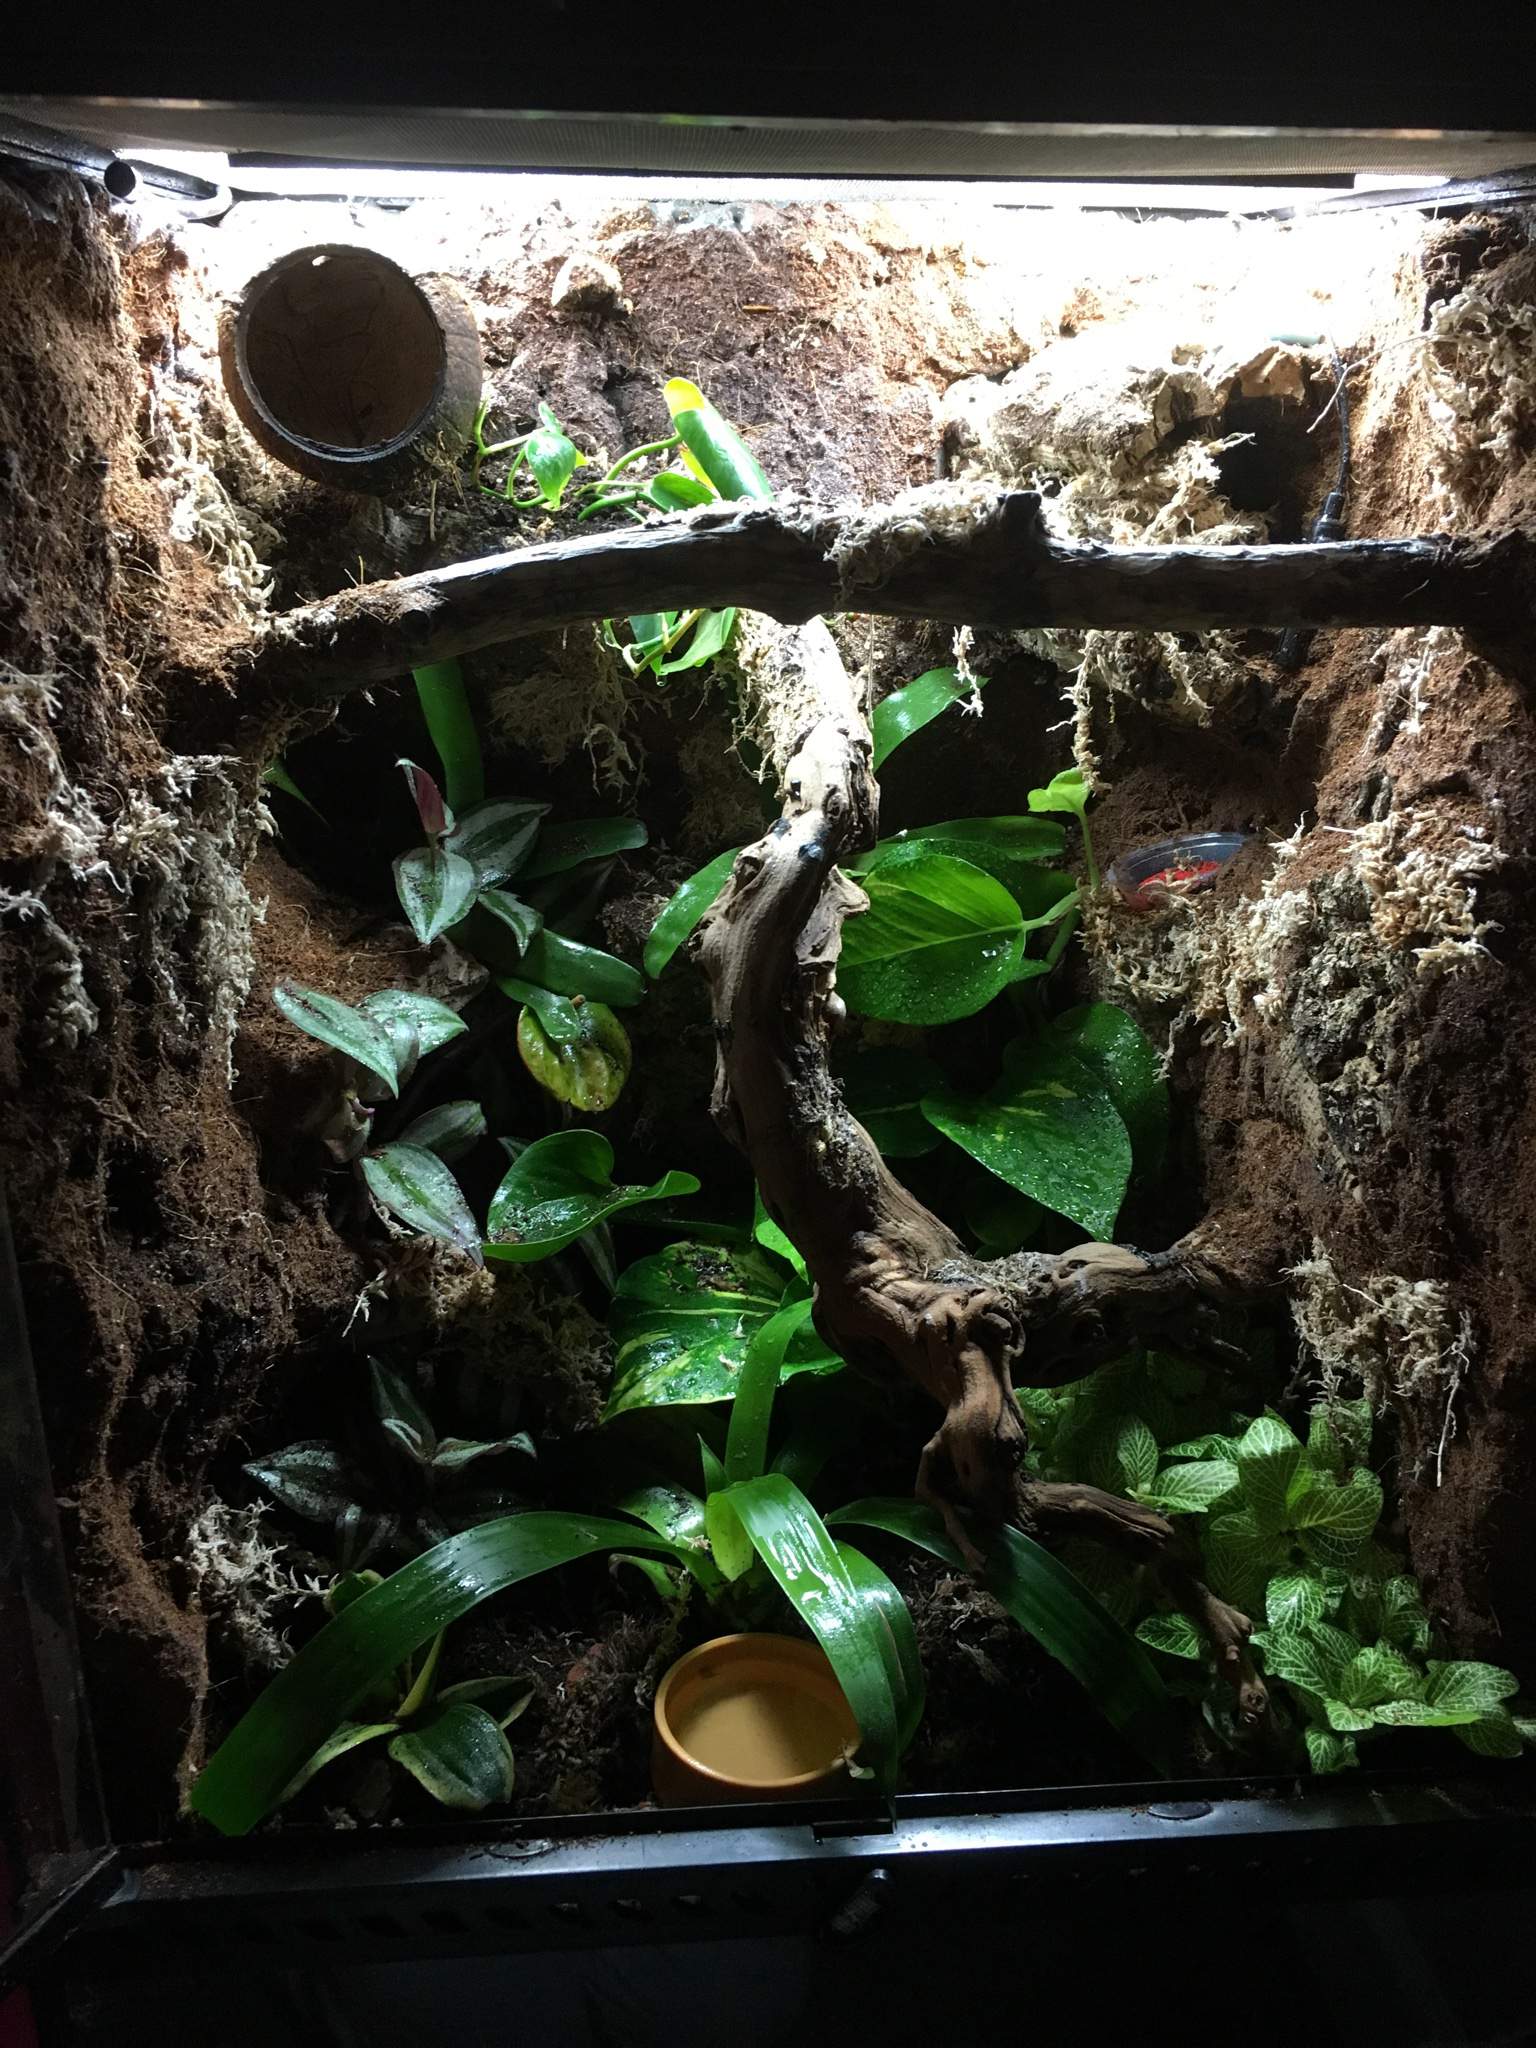 Jax Crested Gecko New Vivarium Design Reptiles Amino,Vole Vs Mole Tunnels